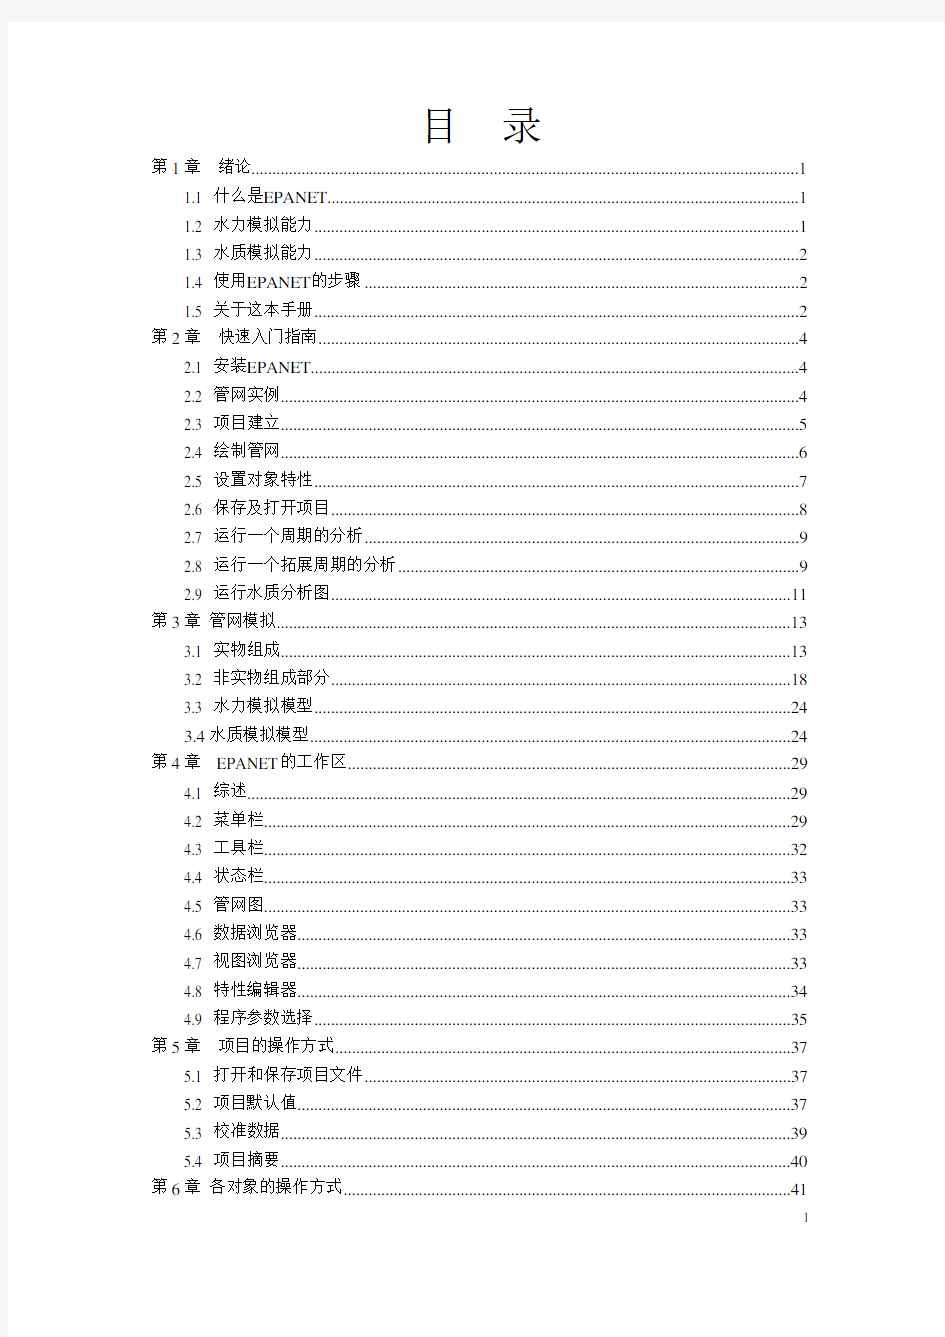 EPANET中文版使用手册部分手稿